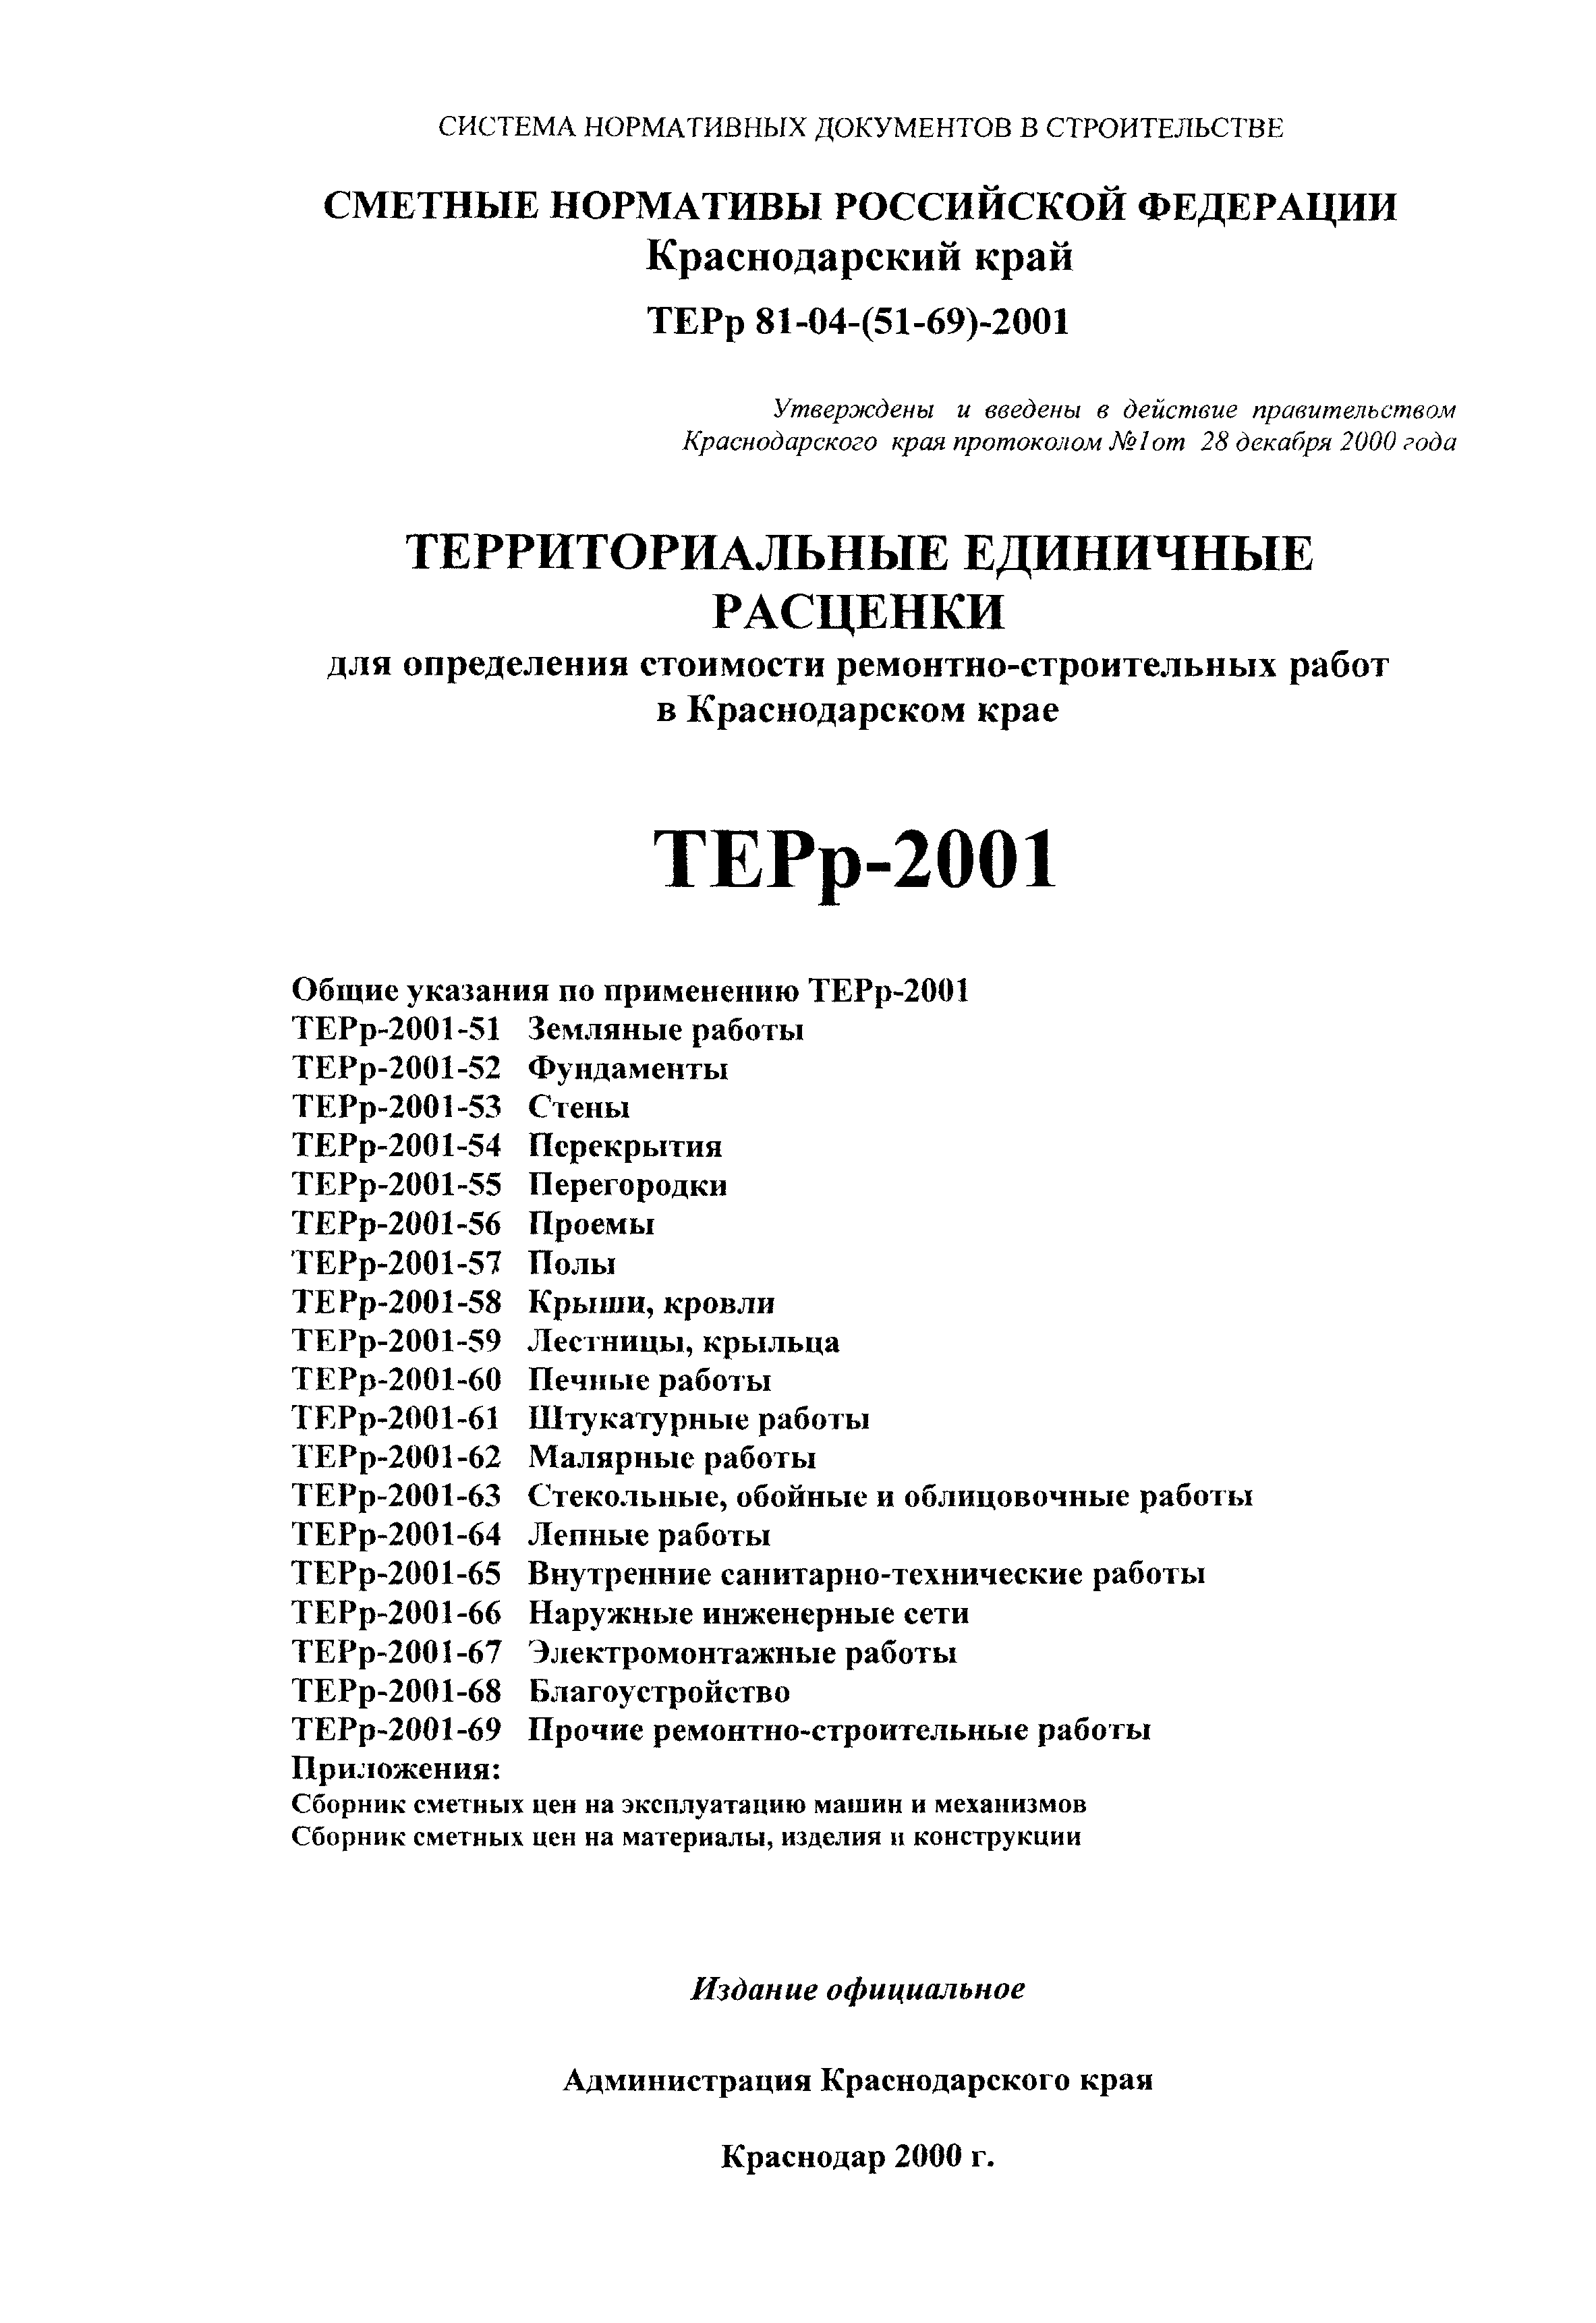 ТЕРр Краснодарского края 2001-69